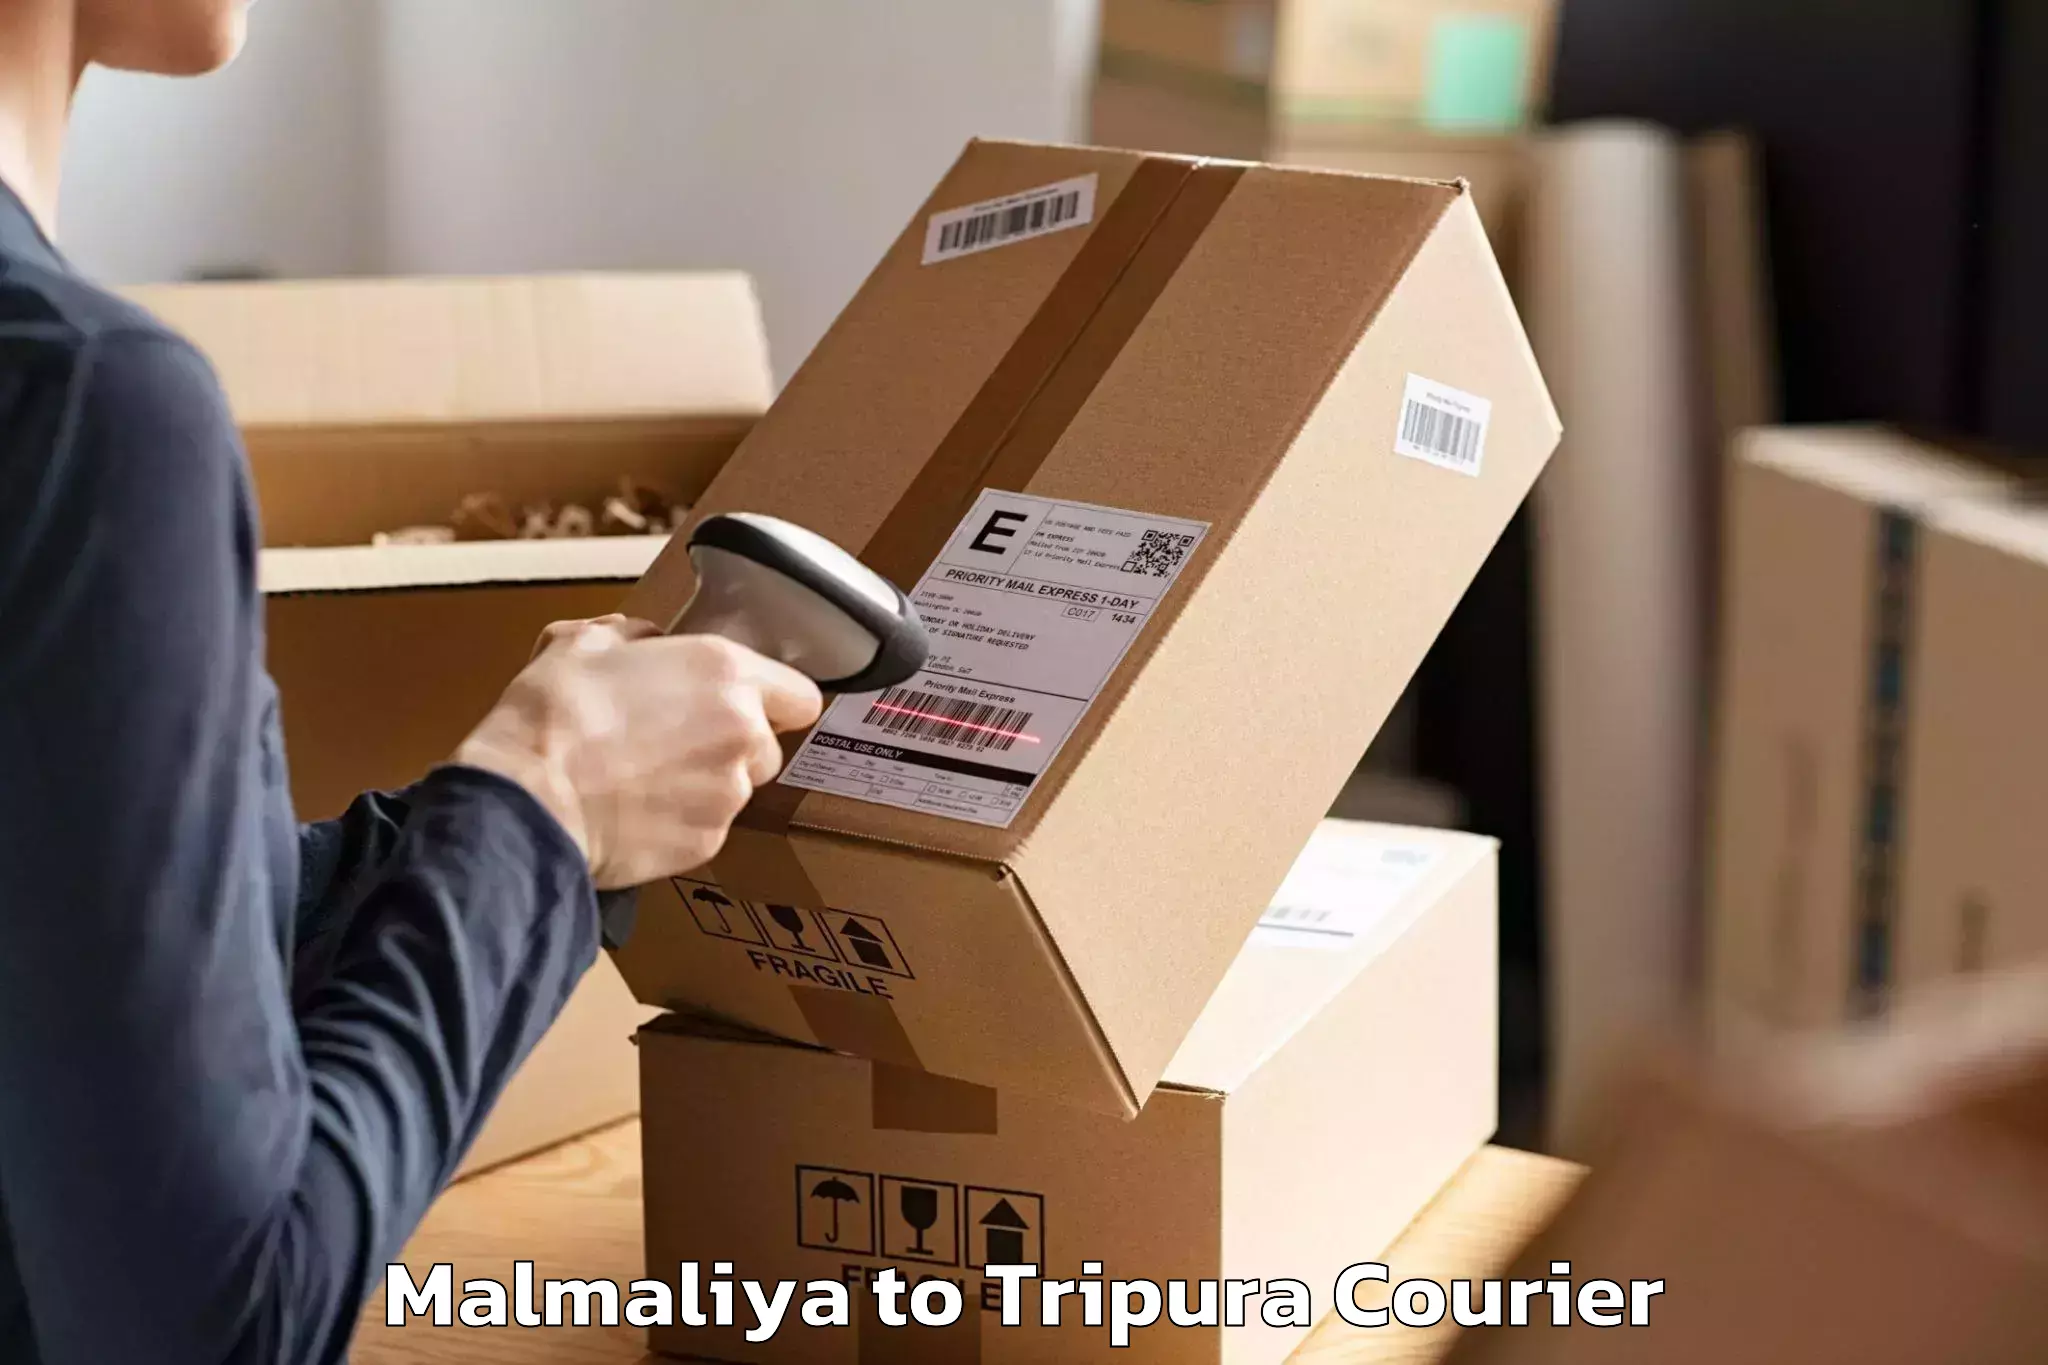 Moving and packing experts Malmaliya to Udaipur Tripura